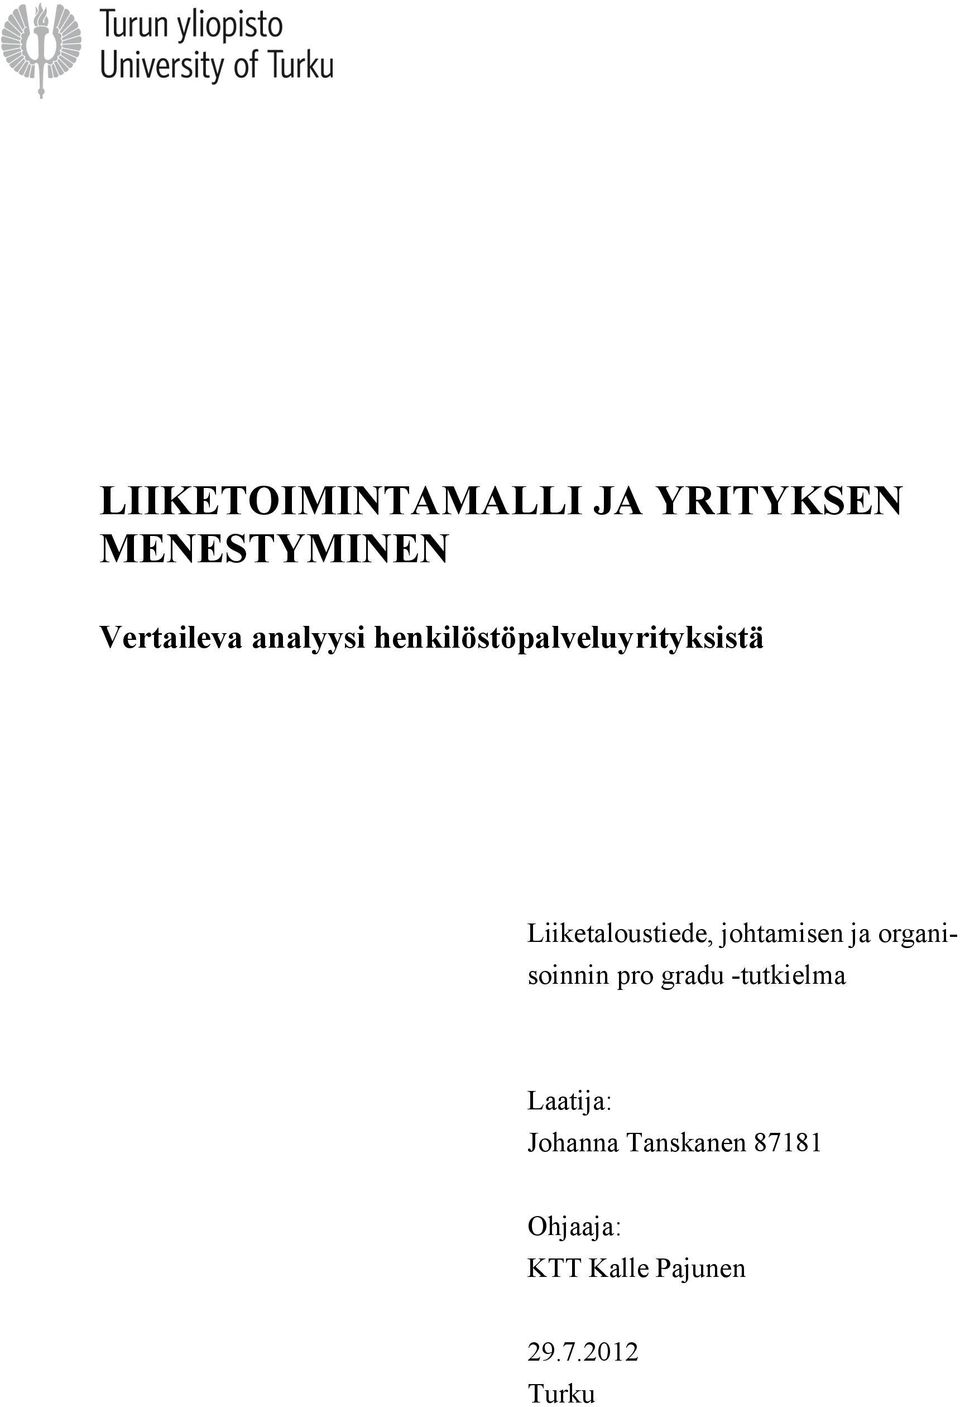 organisoinnin pro gradu -tutkielma Laatija: Johanna Tanskanen 87181